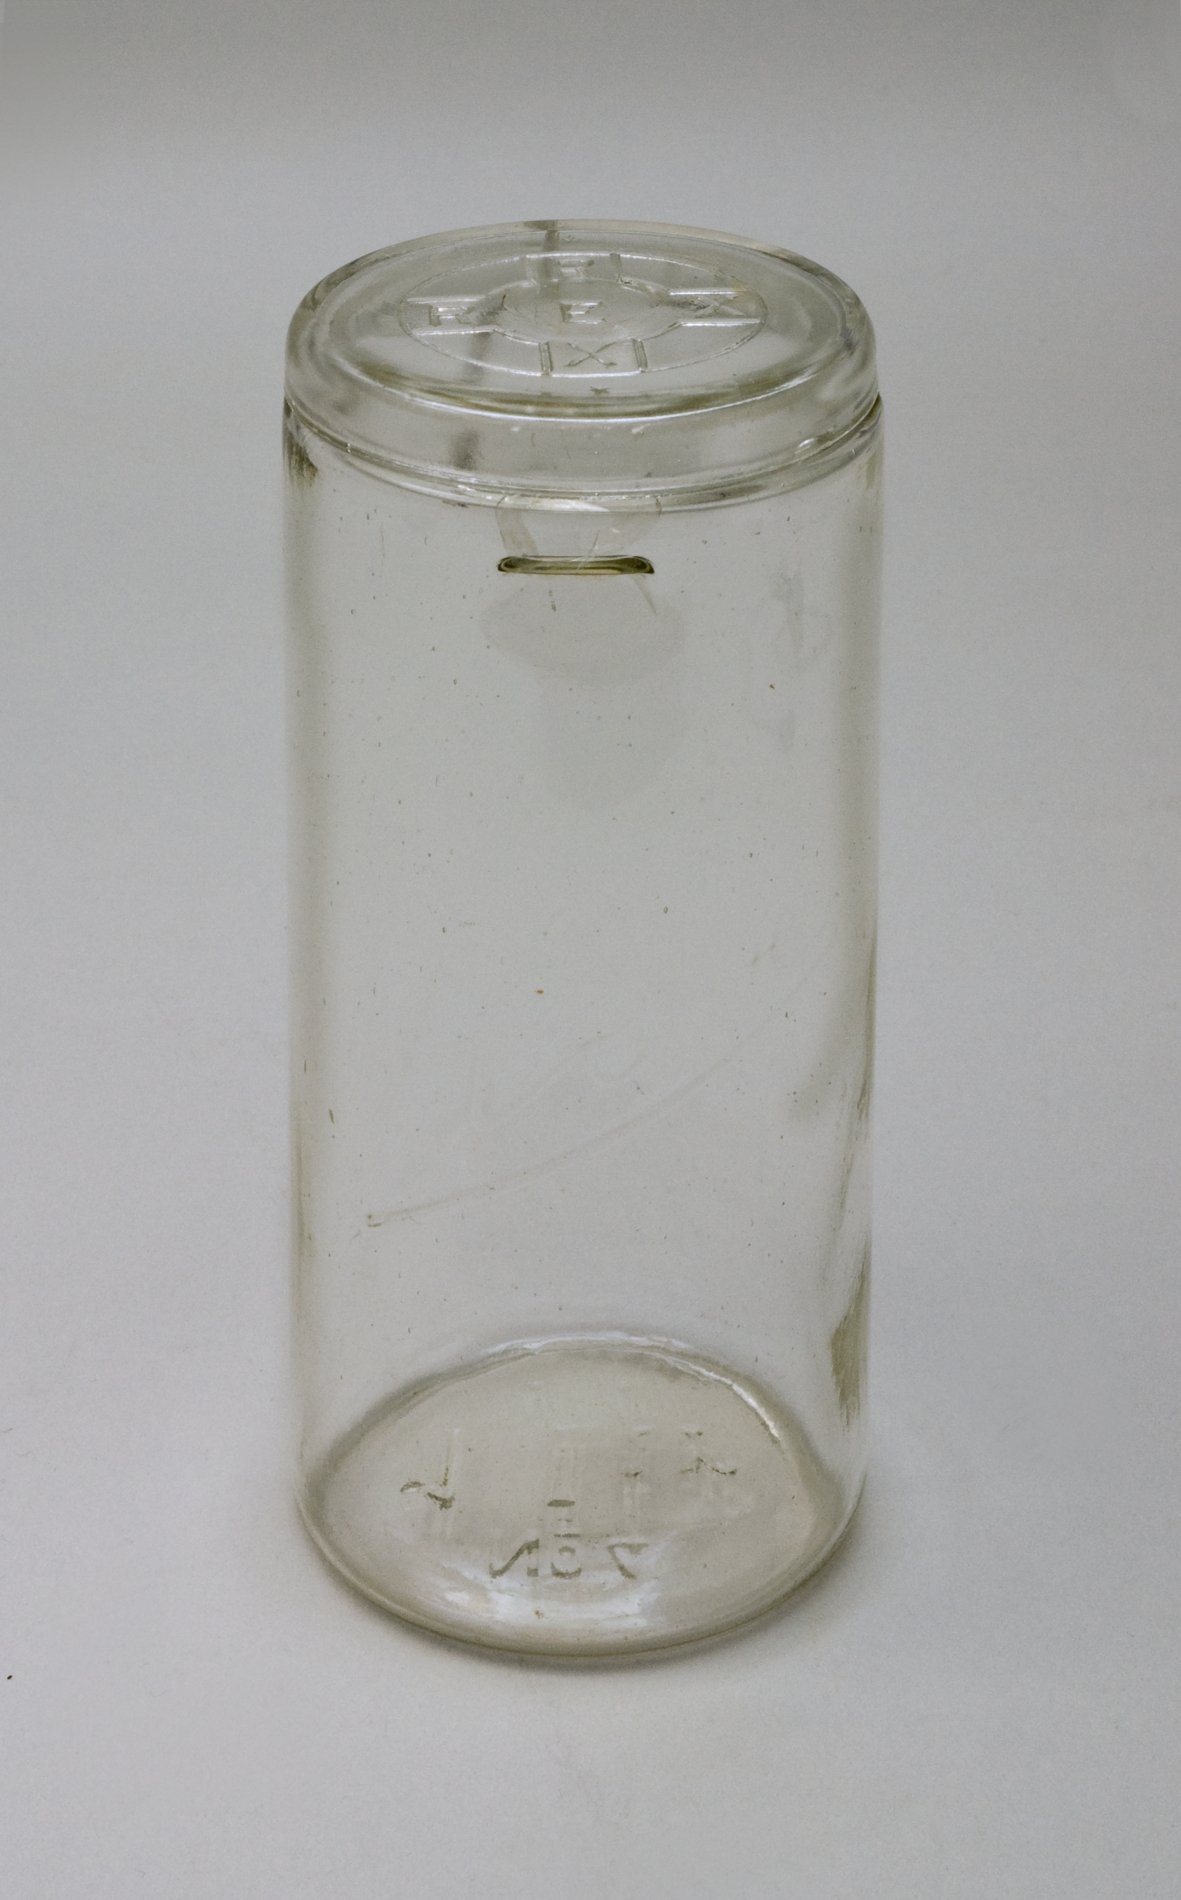 Konservenglas mit Deckel "Rex No.4 1 Ltr." (Stiftung Domäne Dahlem - Landgut und Museum, Weiternutzung nur mit Genehmigung des Museums CC BY-NC-SA)